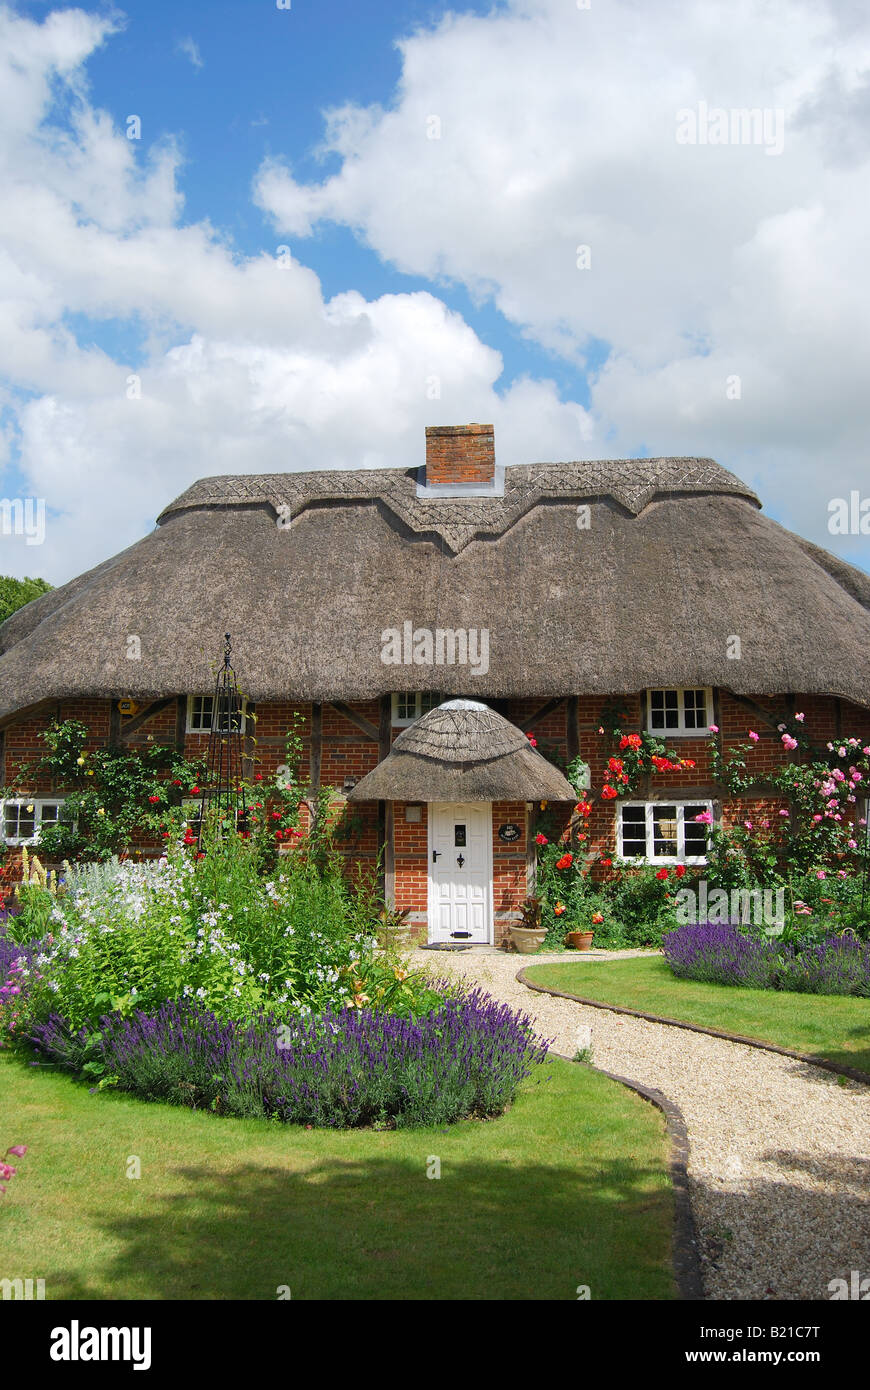 Jolie maison de campagne, de chaume, et le jardin, petite cuisine Stoke, Hampshire, Angleterre, Royaume-Uni Banque D'Images